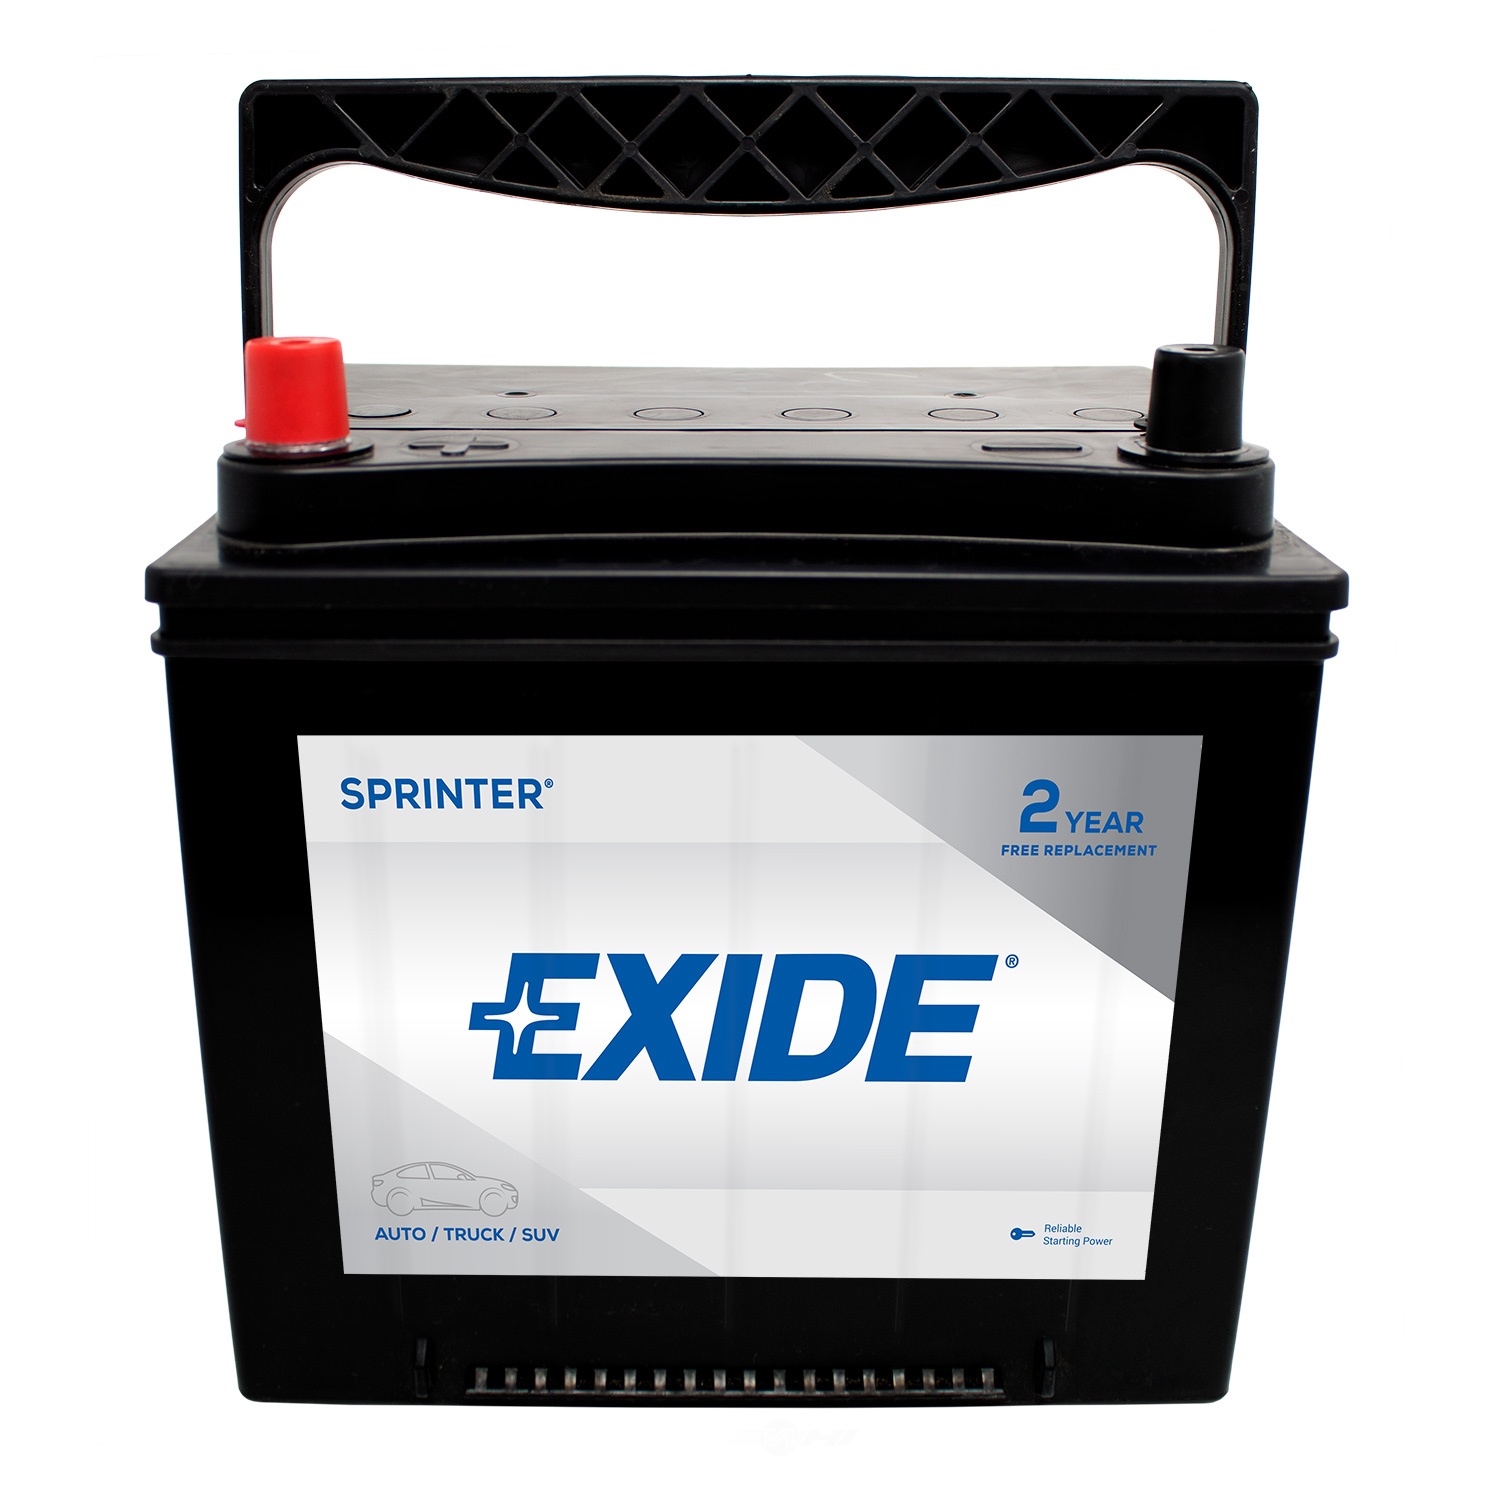 EXIDE BATTERIES - SPRINTER - CCA: 550 - EX1 S25